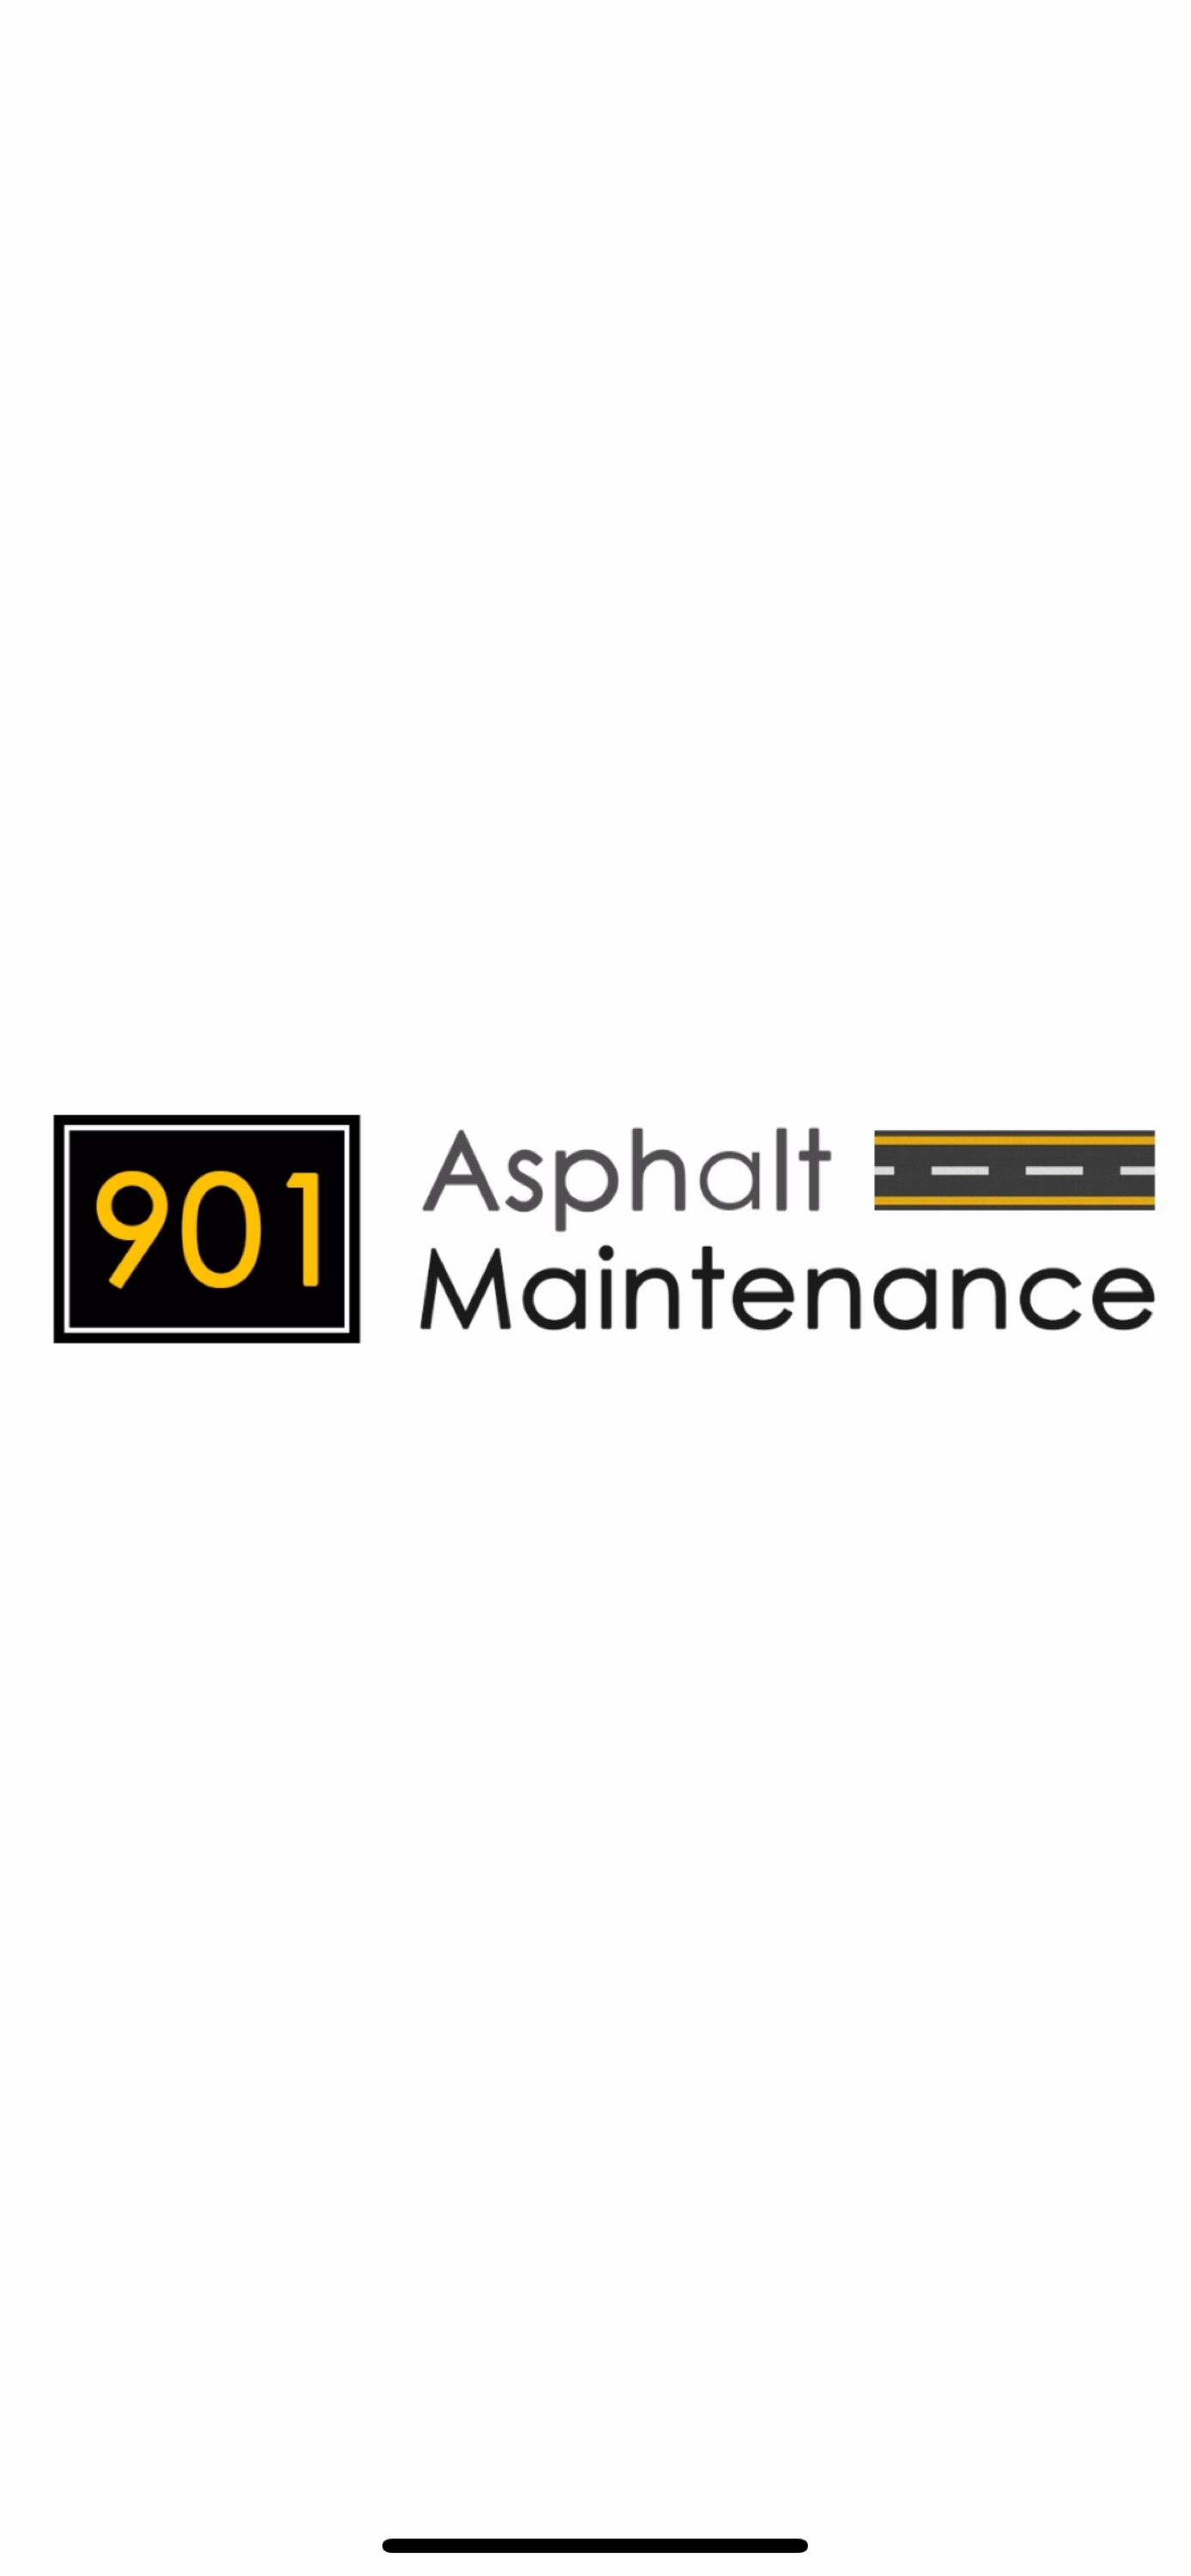 901 Asphalt Maintenance Logo